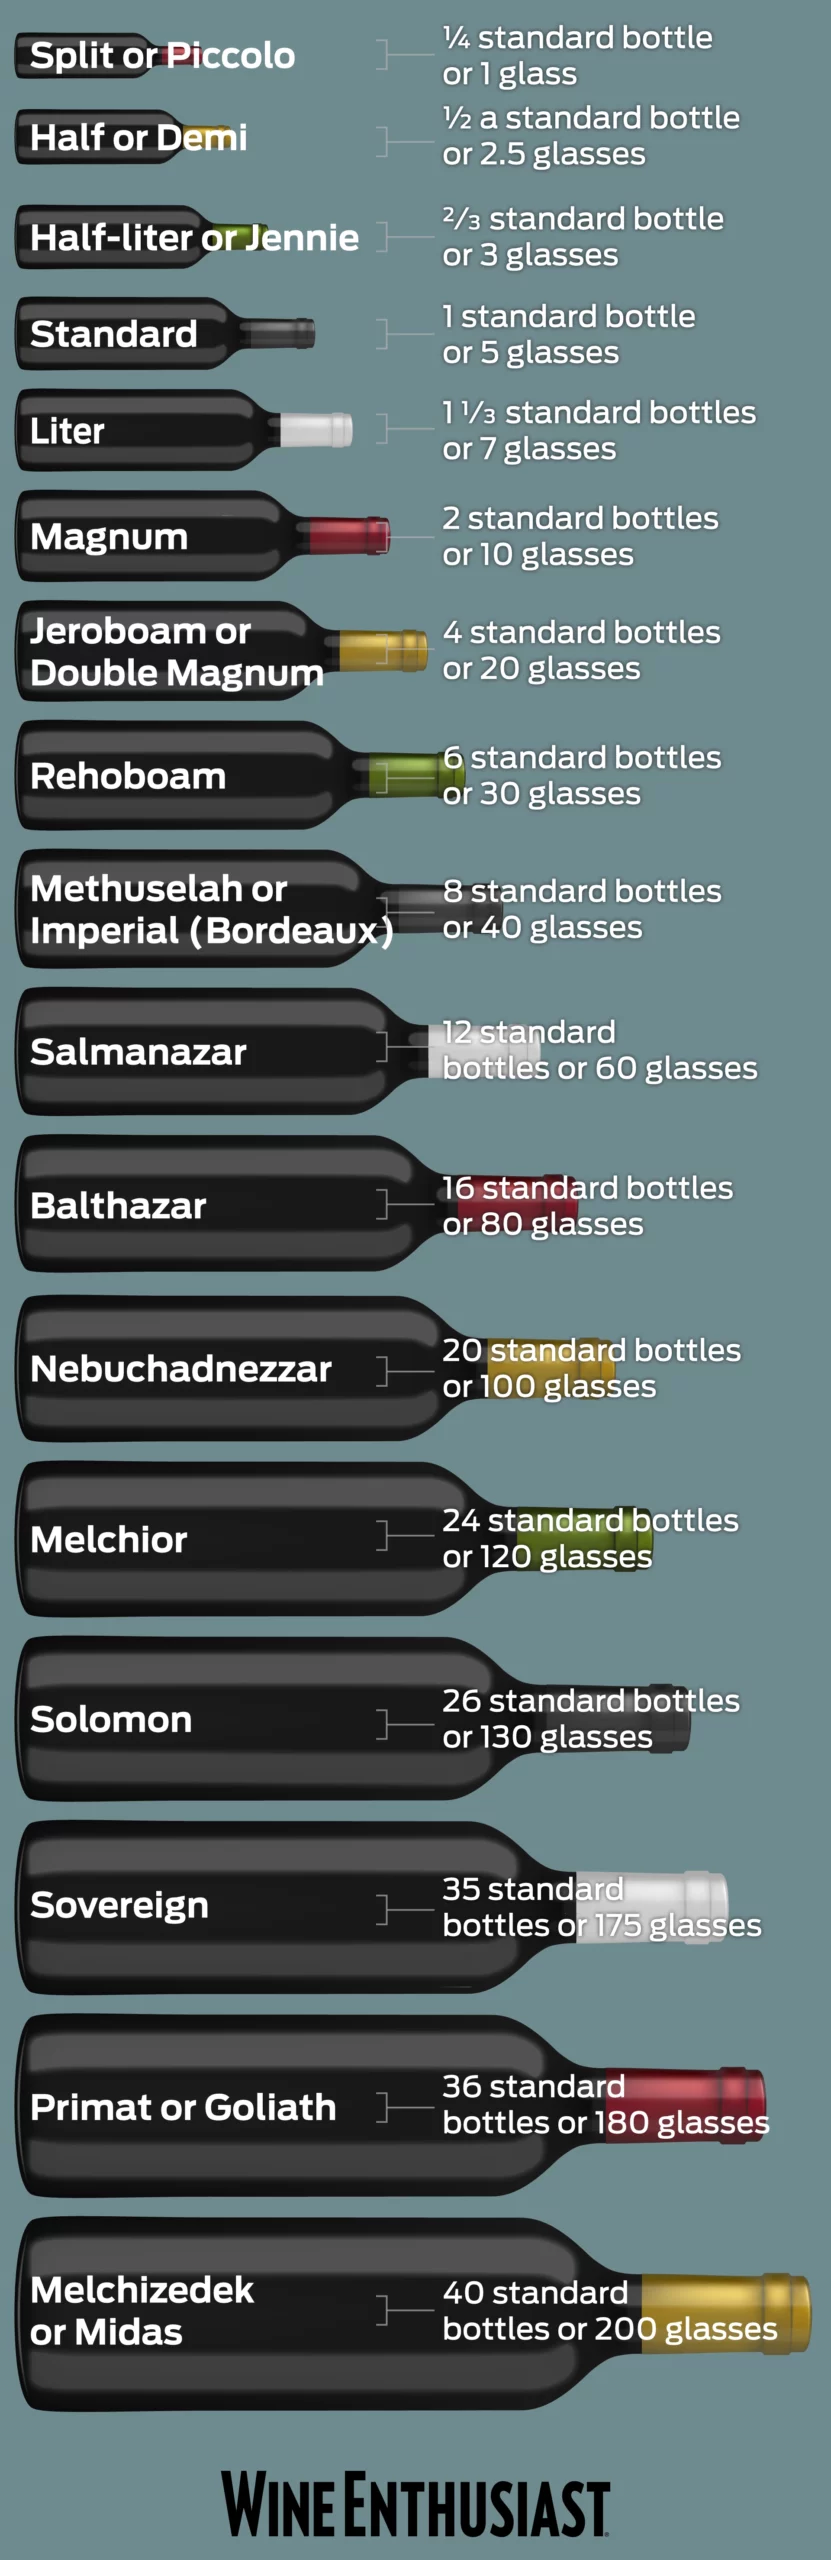 Wine Bottle Sizes